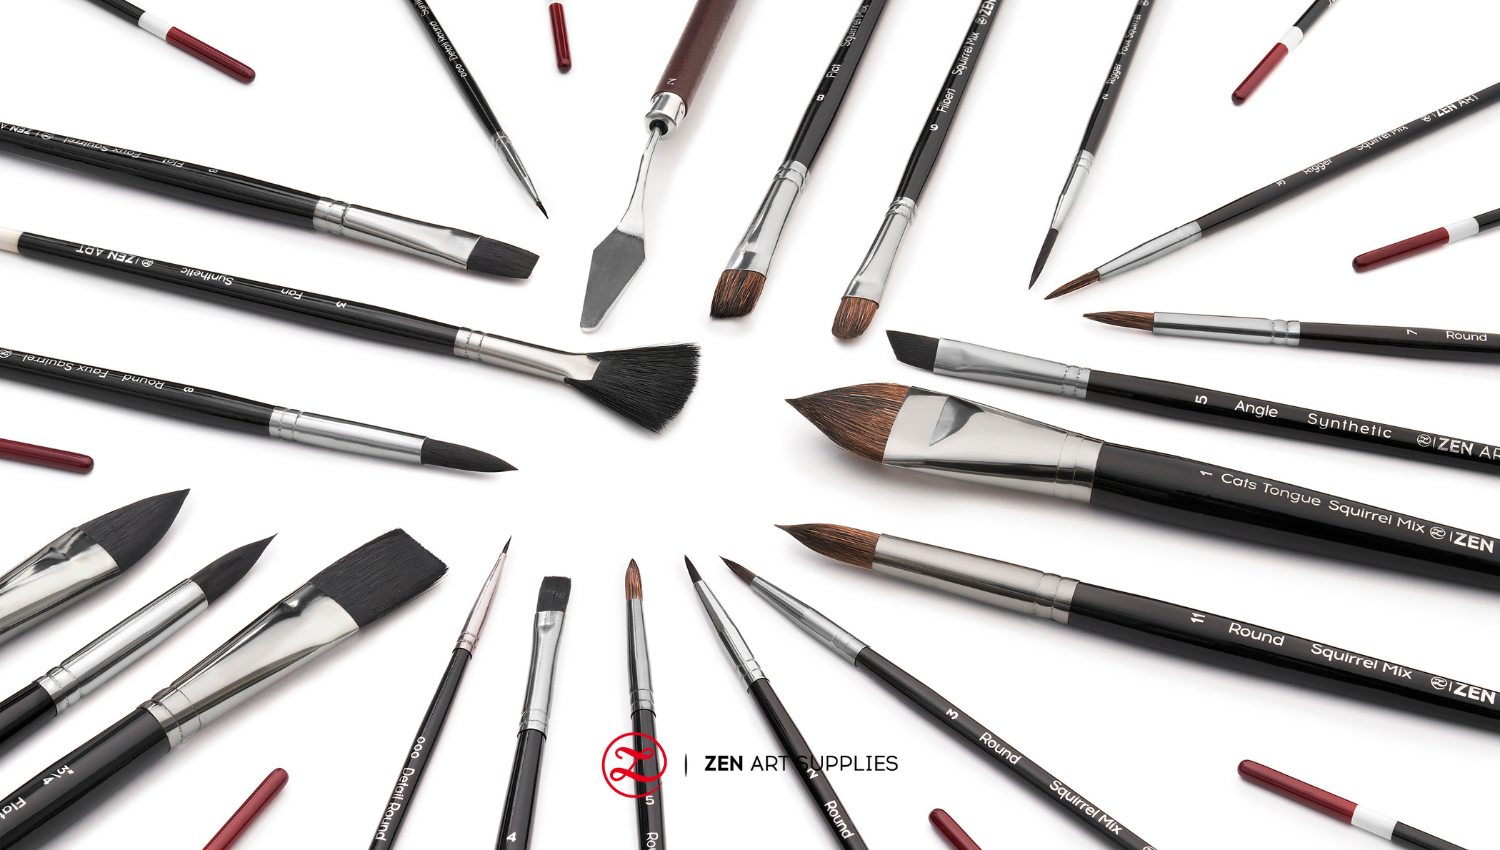 Artist-grade quality brushes from Zen Art Supplies